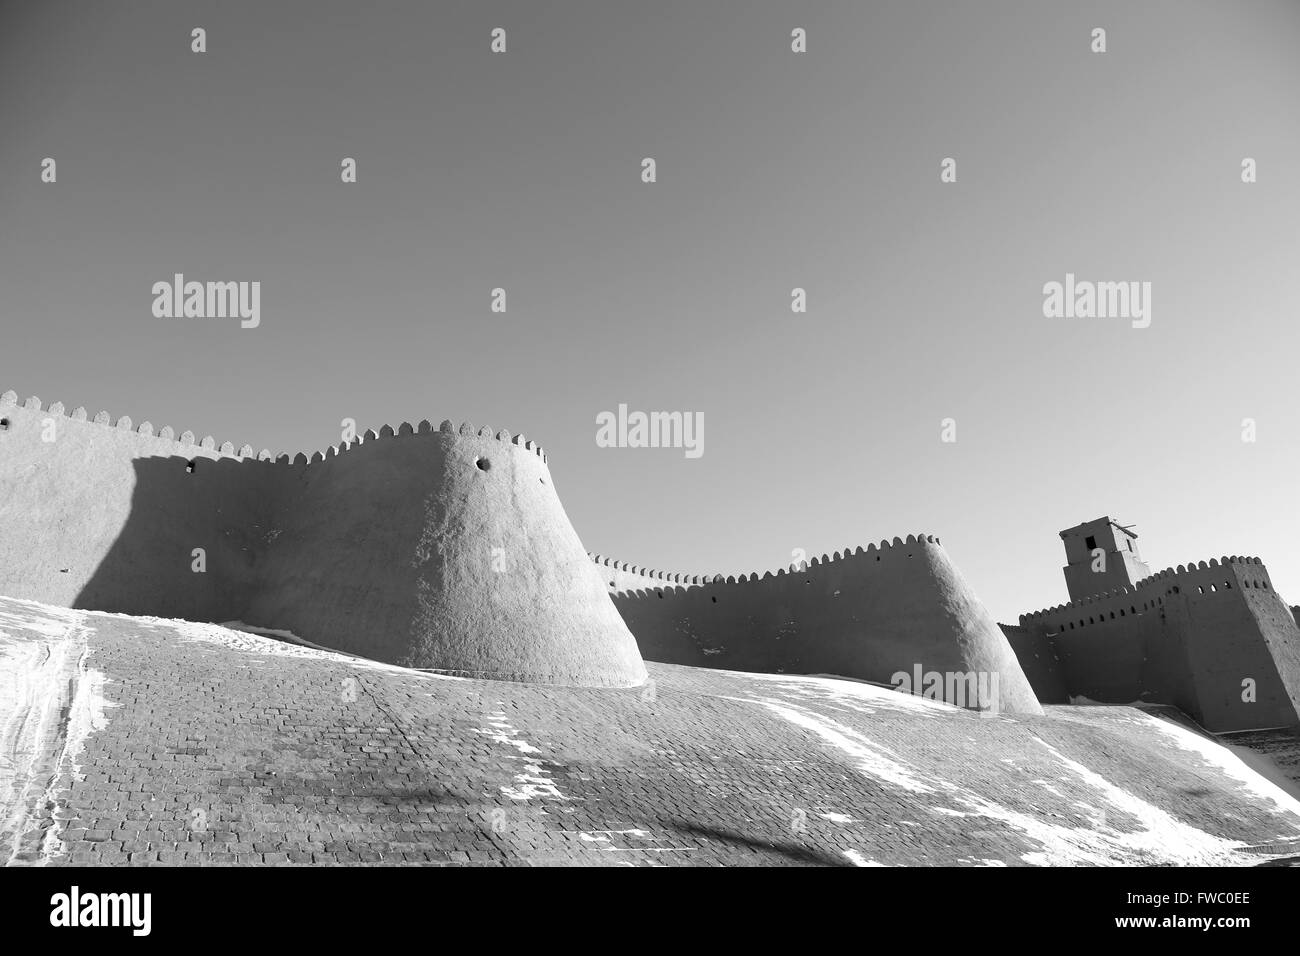 Le pareti in mattoni di stand per proteggere la città vecchia di Ichan Qala. Khiva, Uzbekistan. Foto Stock